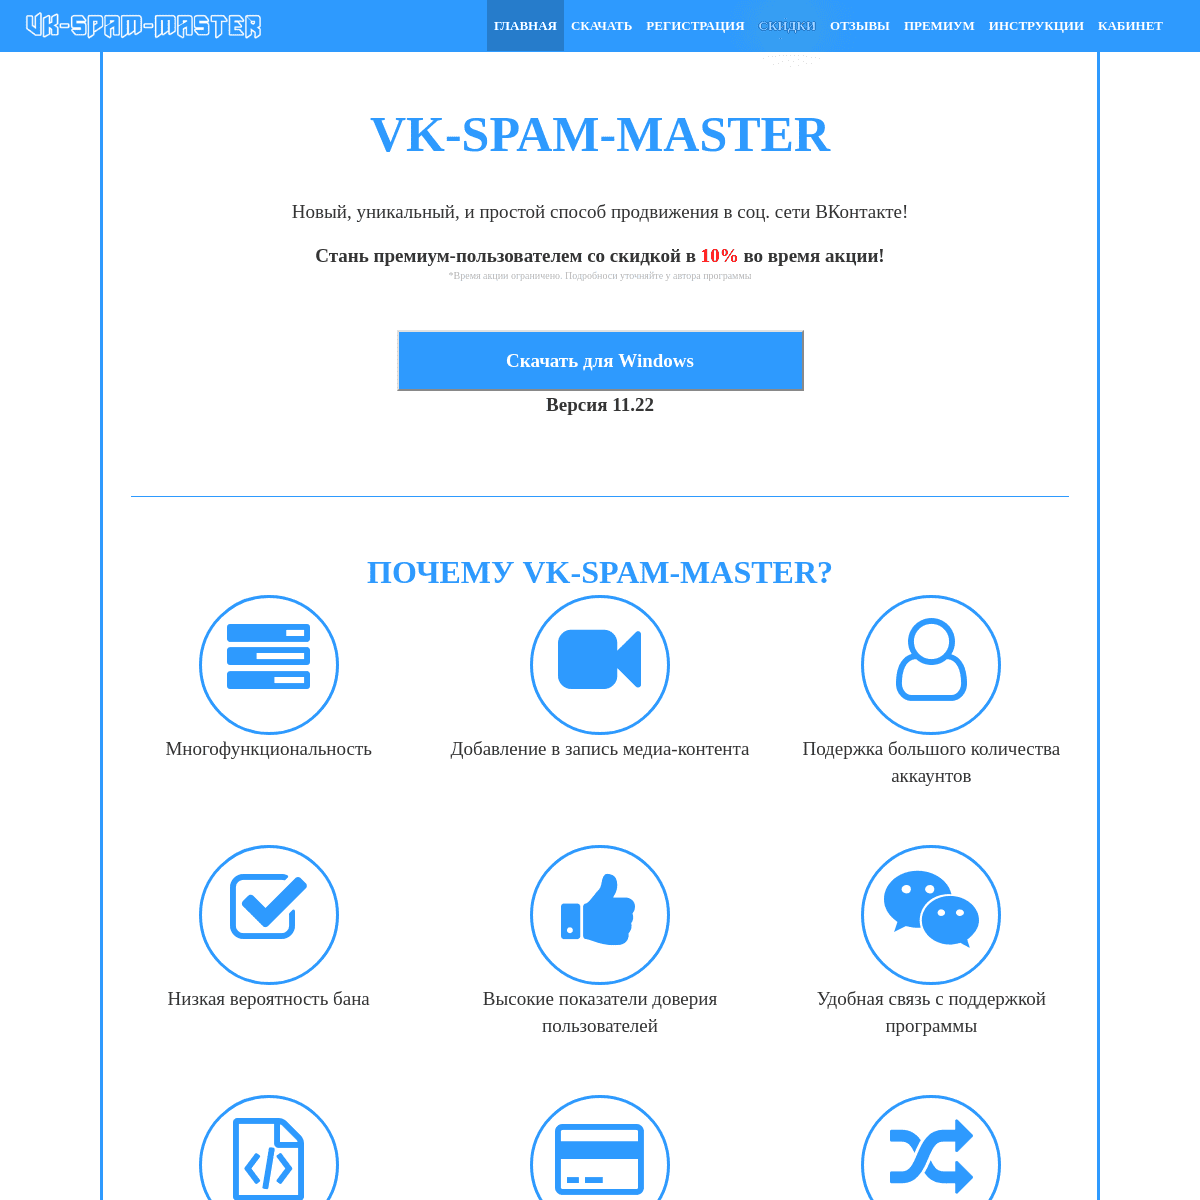 A complete backup of vk-spam-master.com